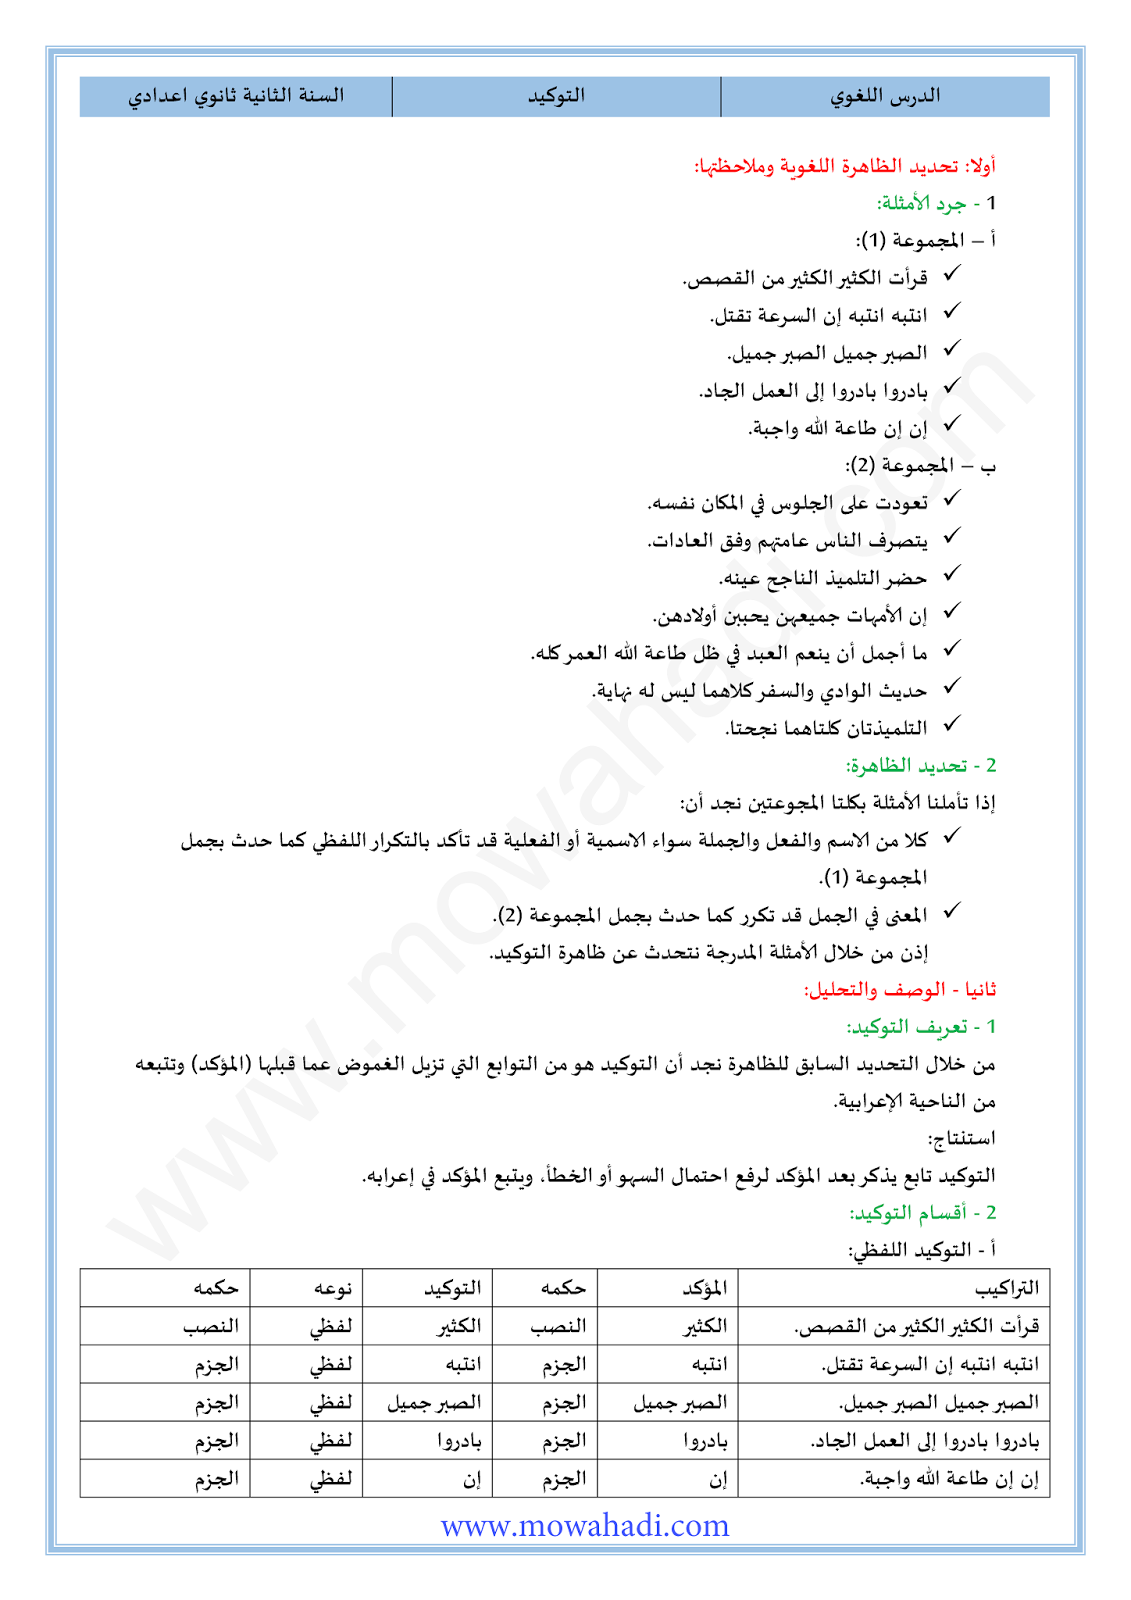 الدرس اللغوي التوكيد للسنة الثانية اعدادي في مادة اللغة العربية 17-cours-loghawi2_001